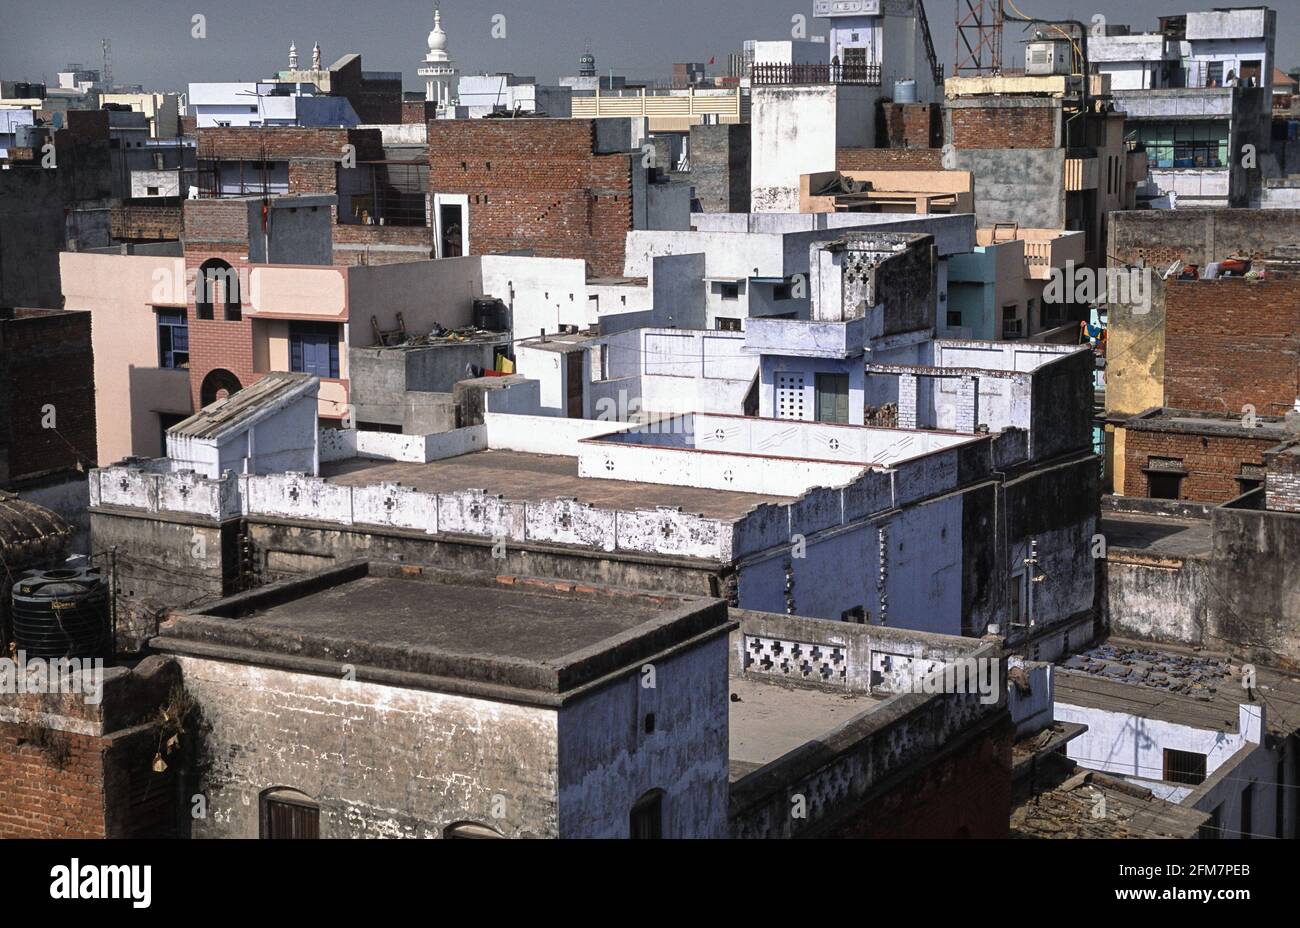 22.03.2010, Varanasi, Uttar Pradesh, Indien, Asien - erhöhte Ansicht der Dächer und Gebäude in der historischen Altstadt nicht weit vom Ganges-Fluss. Stockfoto